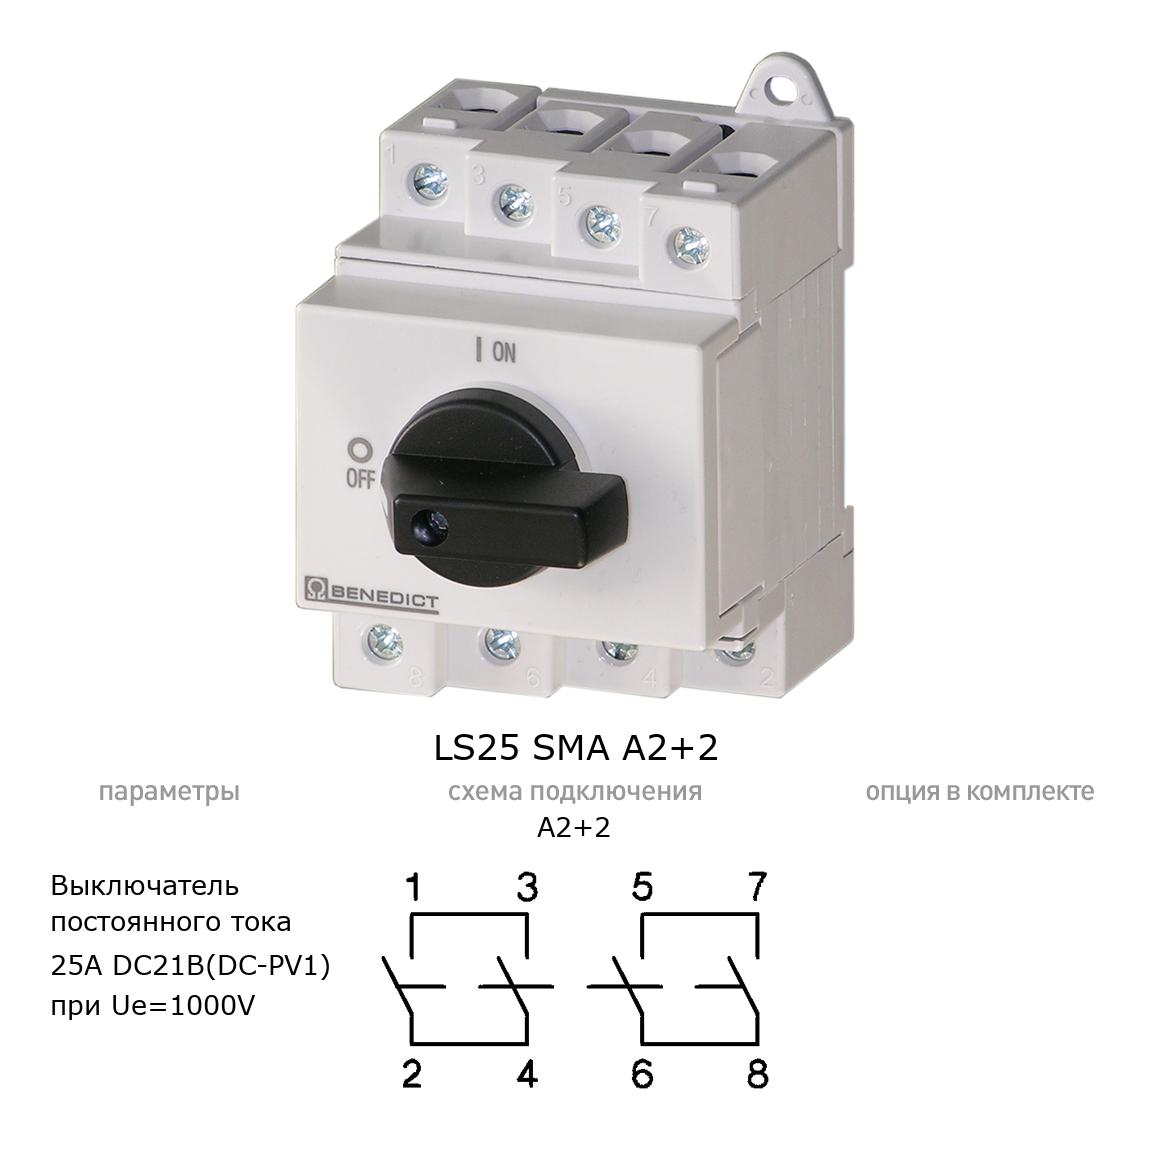 Кулачковый переключатель для постоянного тока (DC) LS25 SMA A2+2 BENEDICT